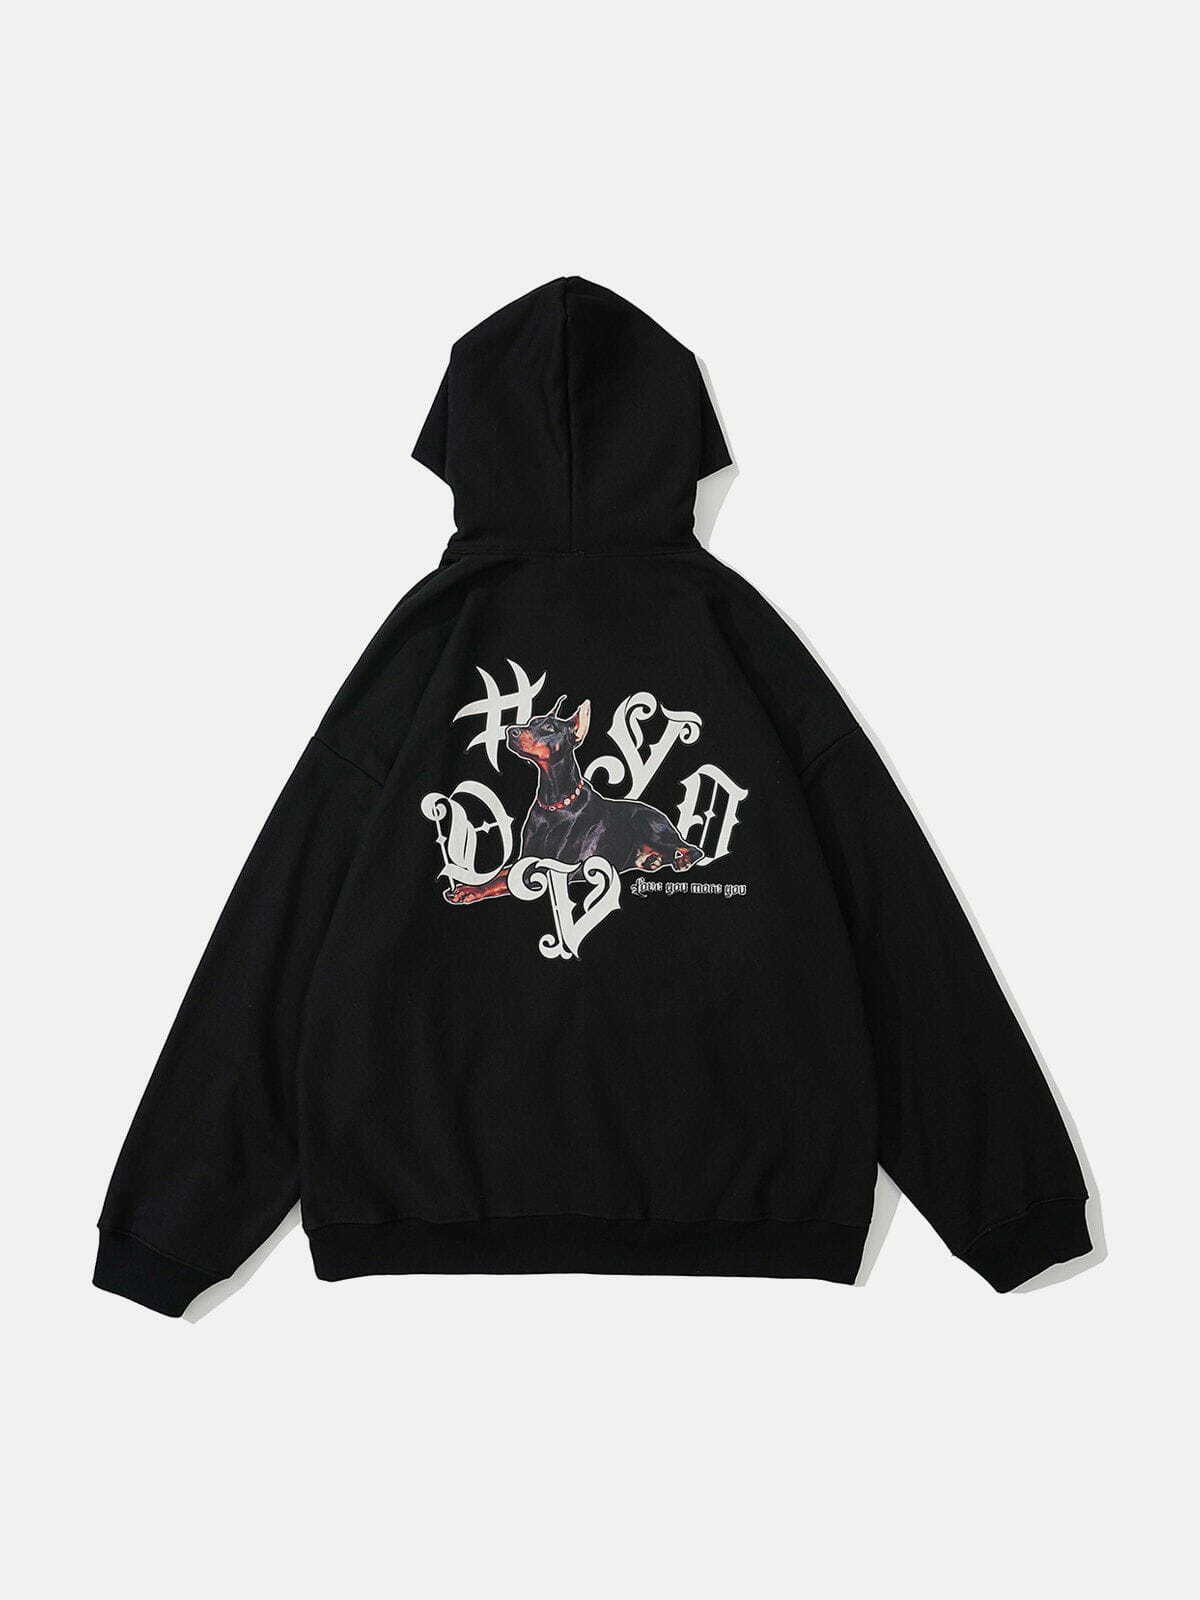 dynamic doberman print hoodie edgy streetwear 1698